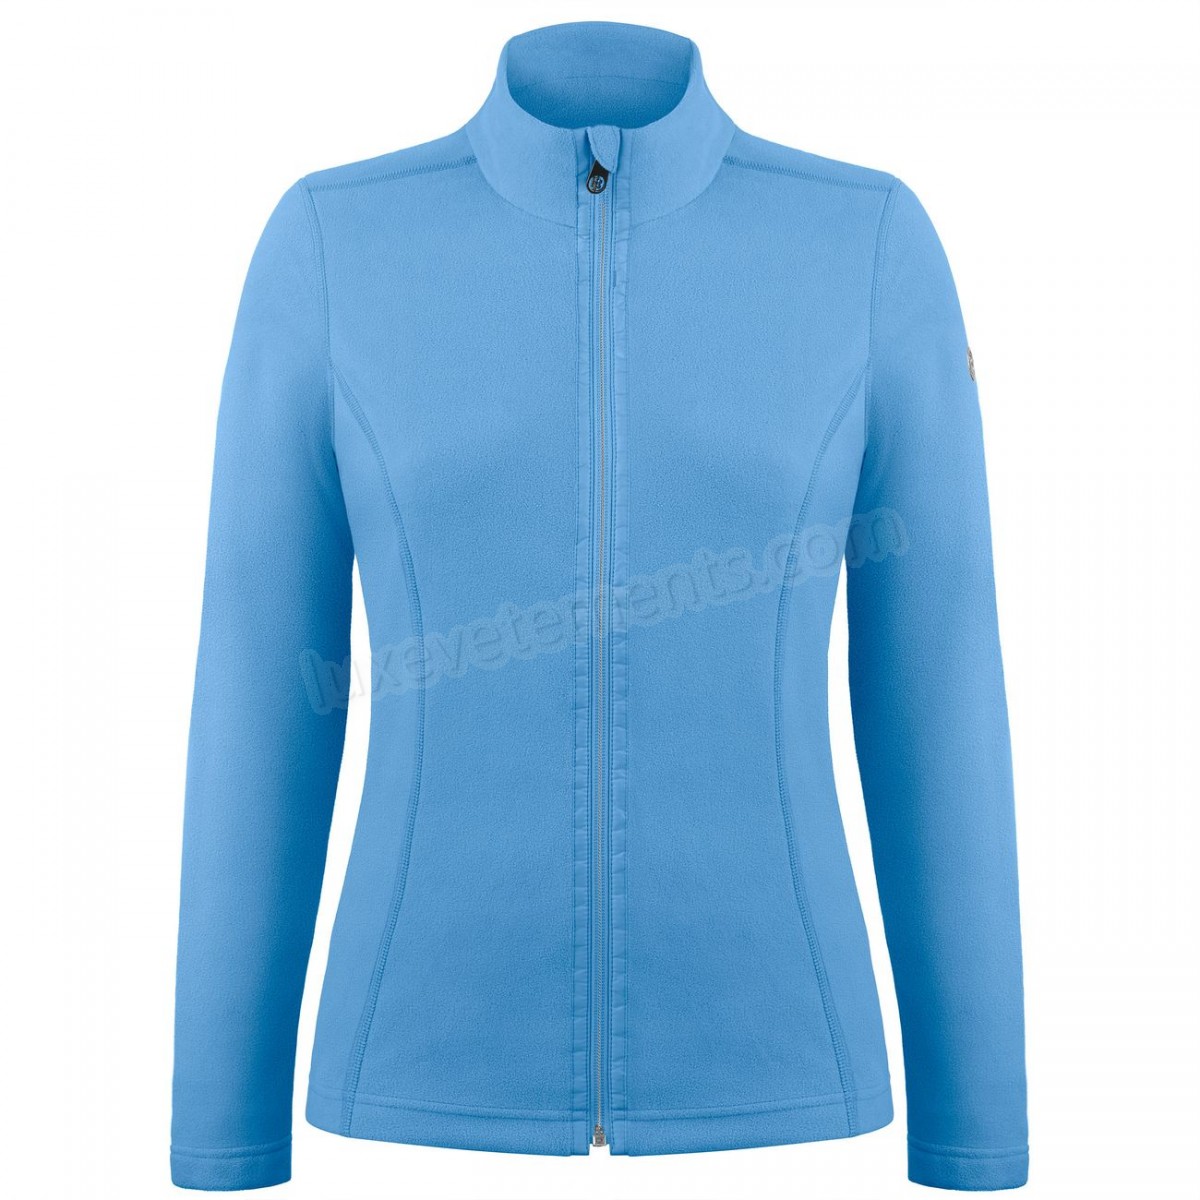 Poivre Blanc-Sports d'hiver femme POIVRE BLANC Veste Polaire Poivre Blanc Fleece Jacket 1500 Polar Blue Femme Vente en ligne - -3